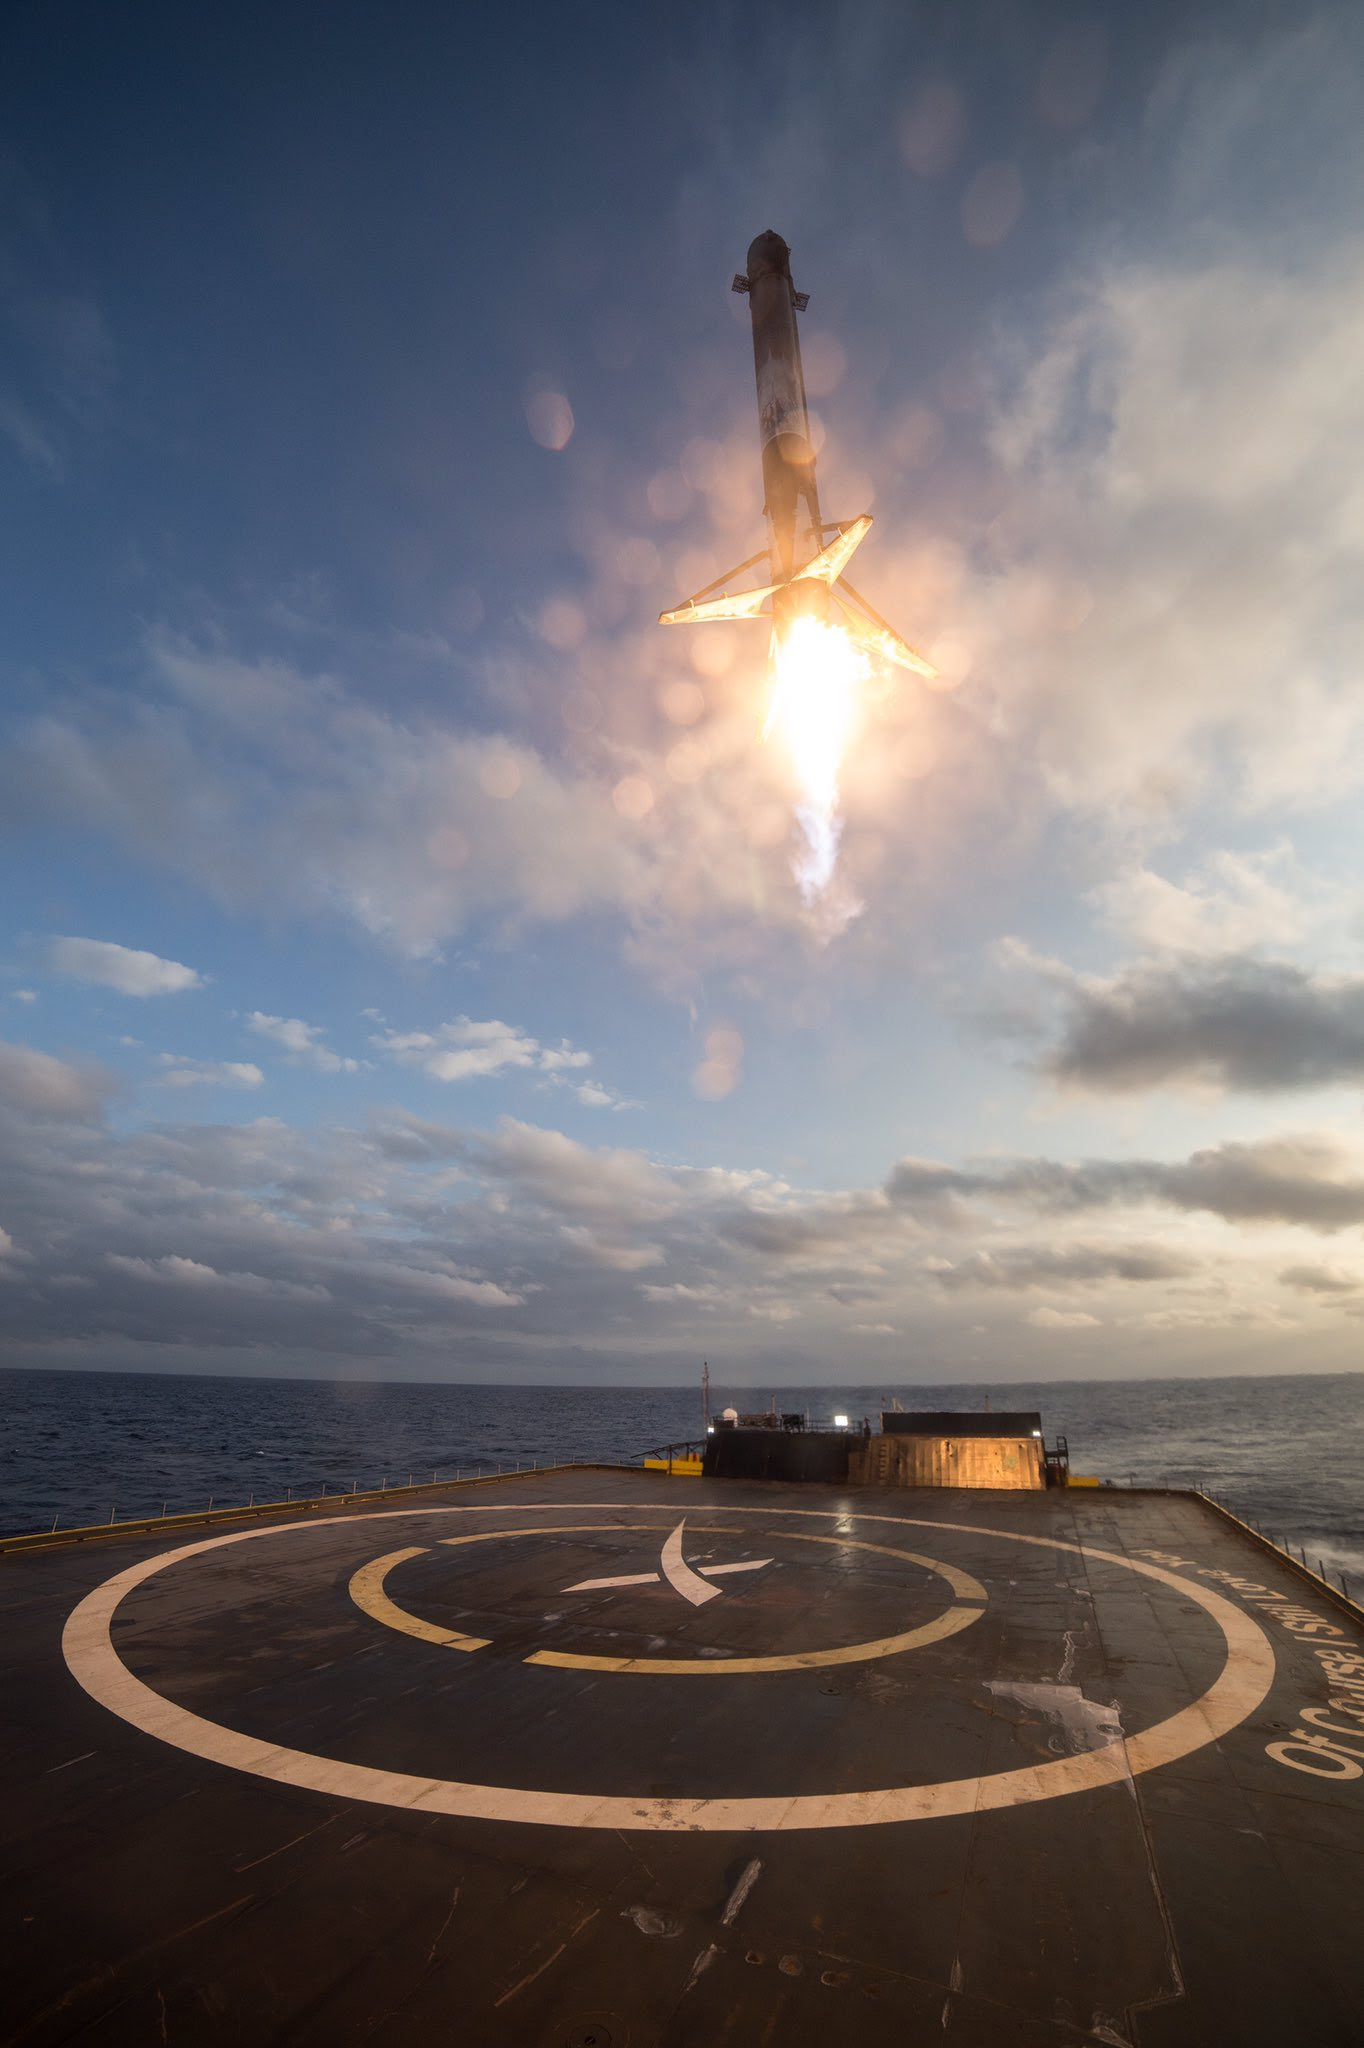 Mar31-2017-SpaceX-Falcon9-landing